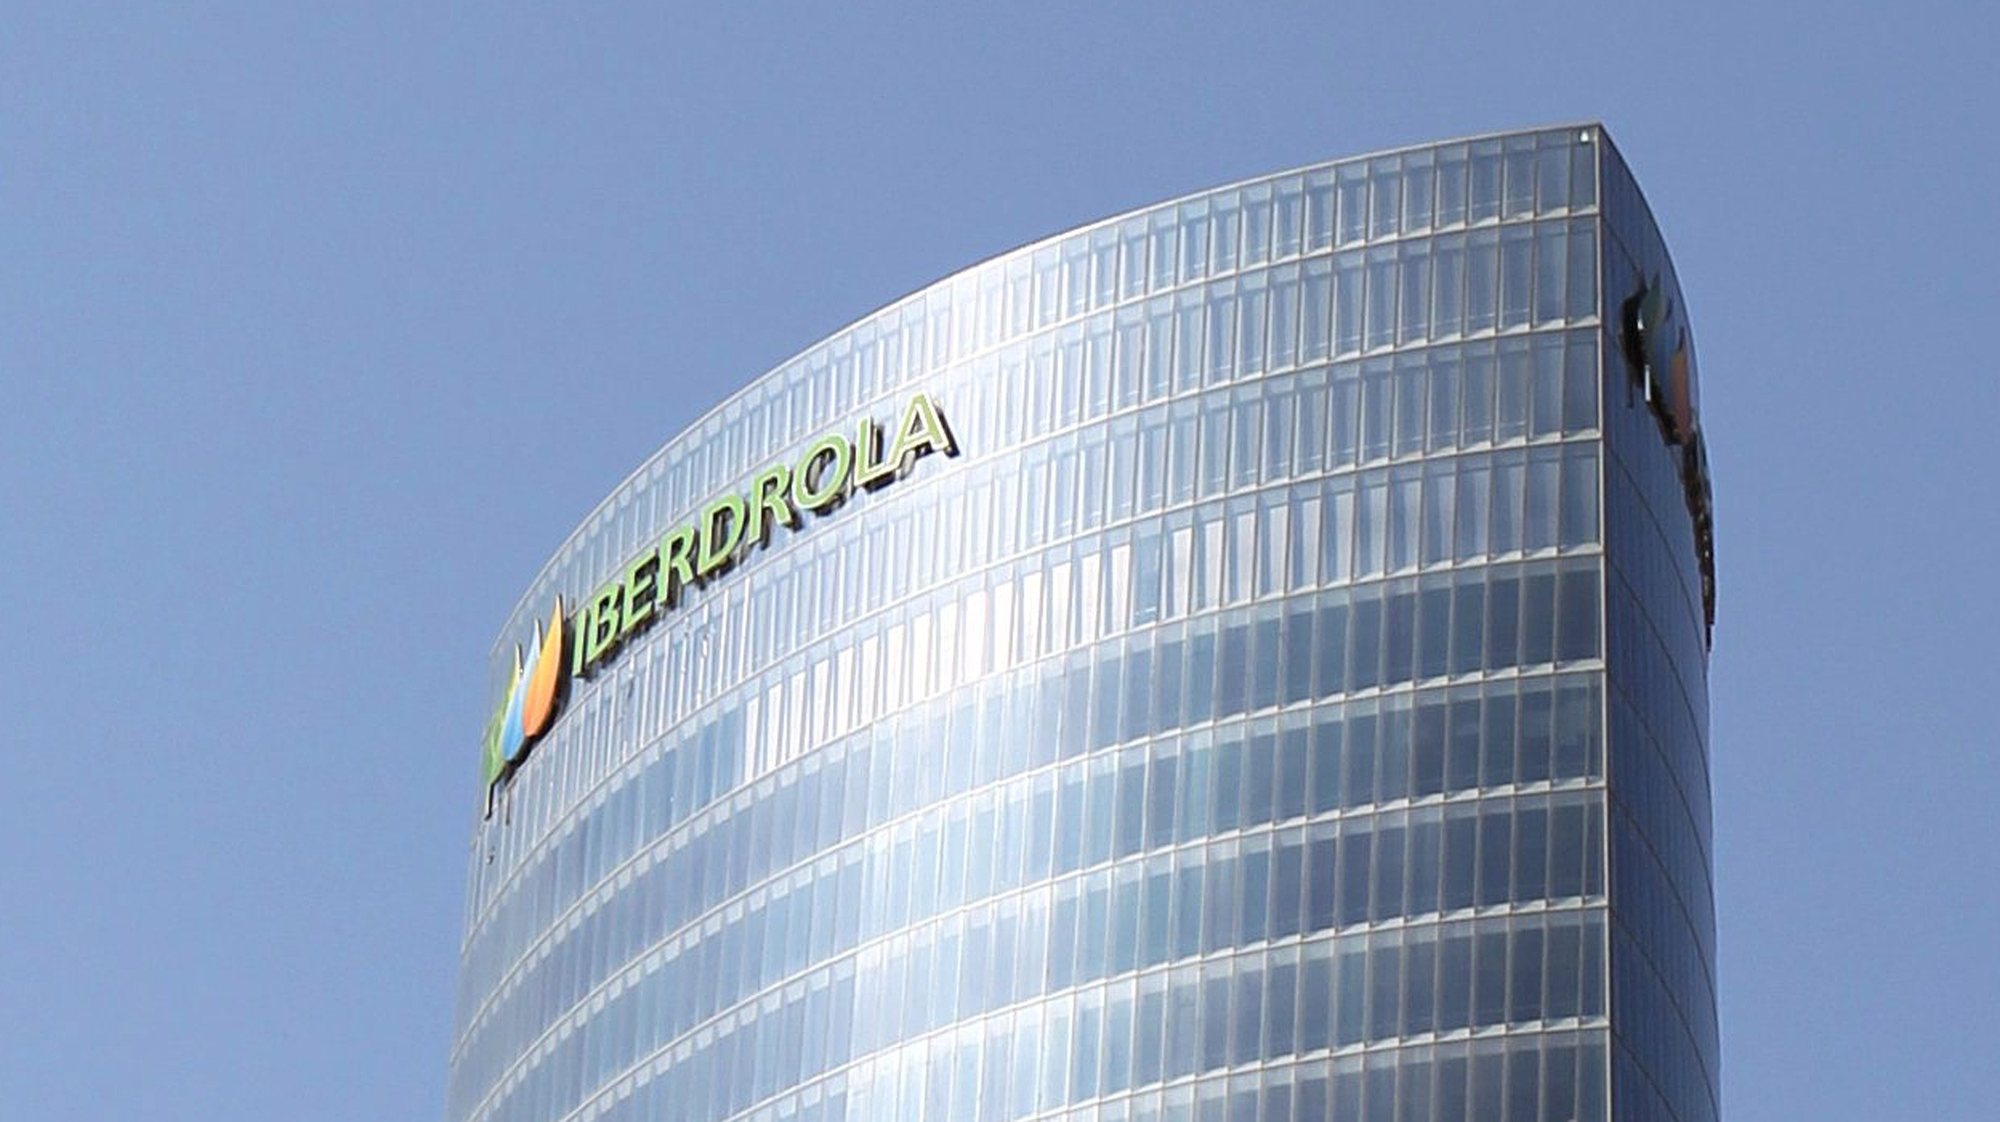 Sede da empresas energética espanhola Iberdrola, em Bilbao.